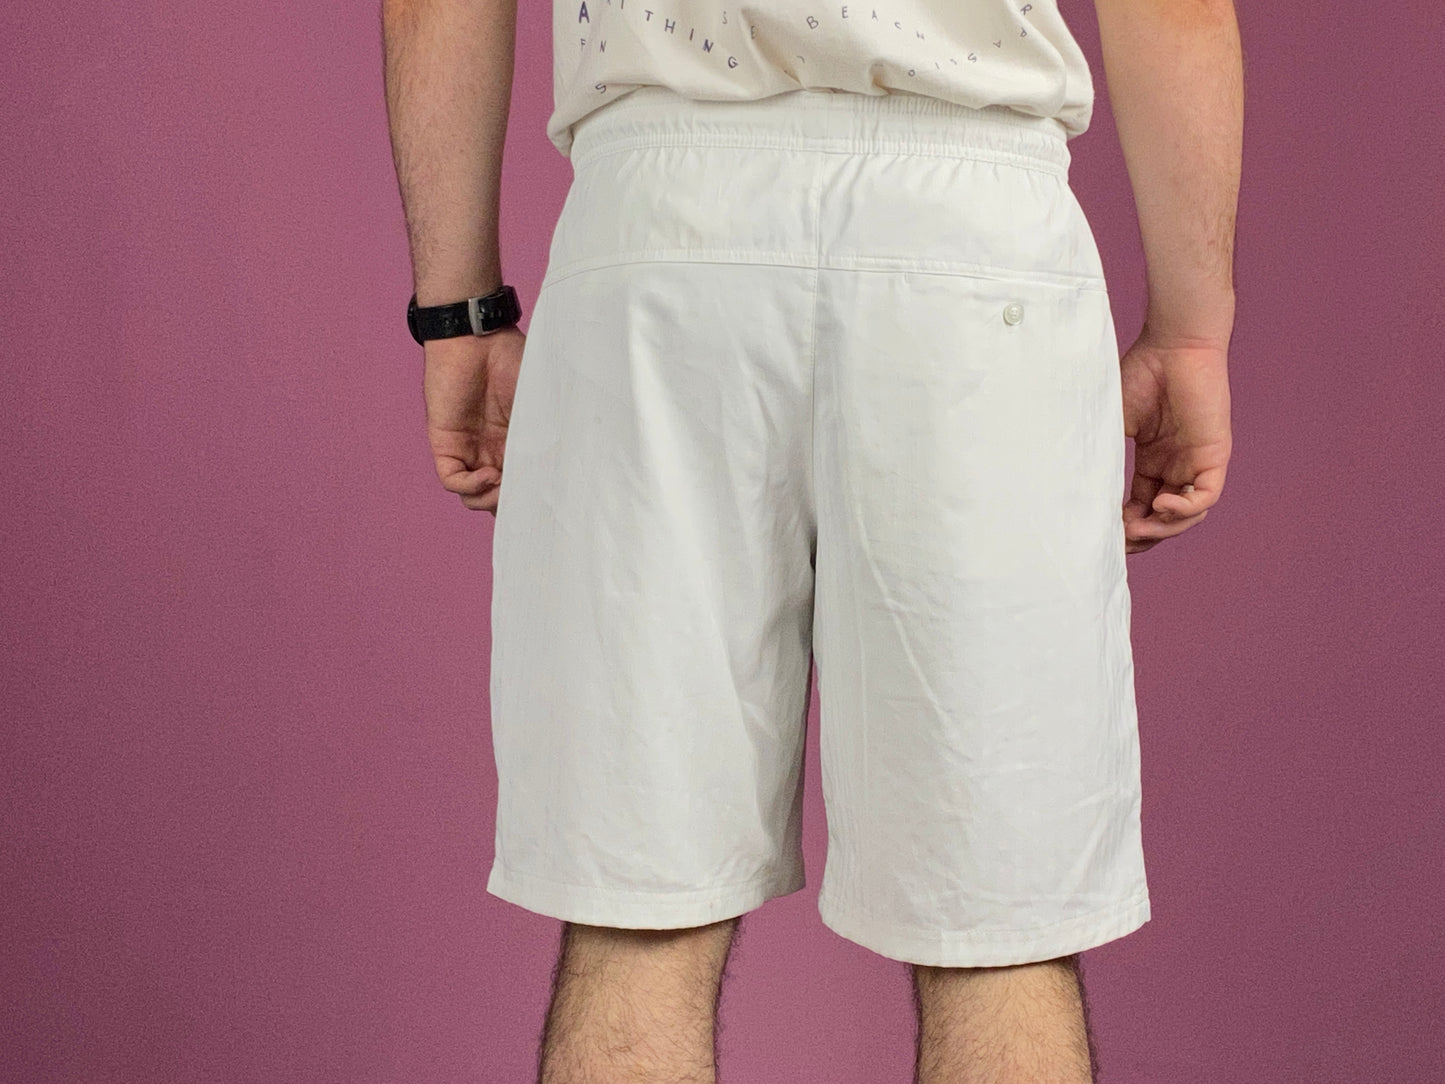 Nike Vintage Men's Track Shorts - Medium Navy White Polyester